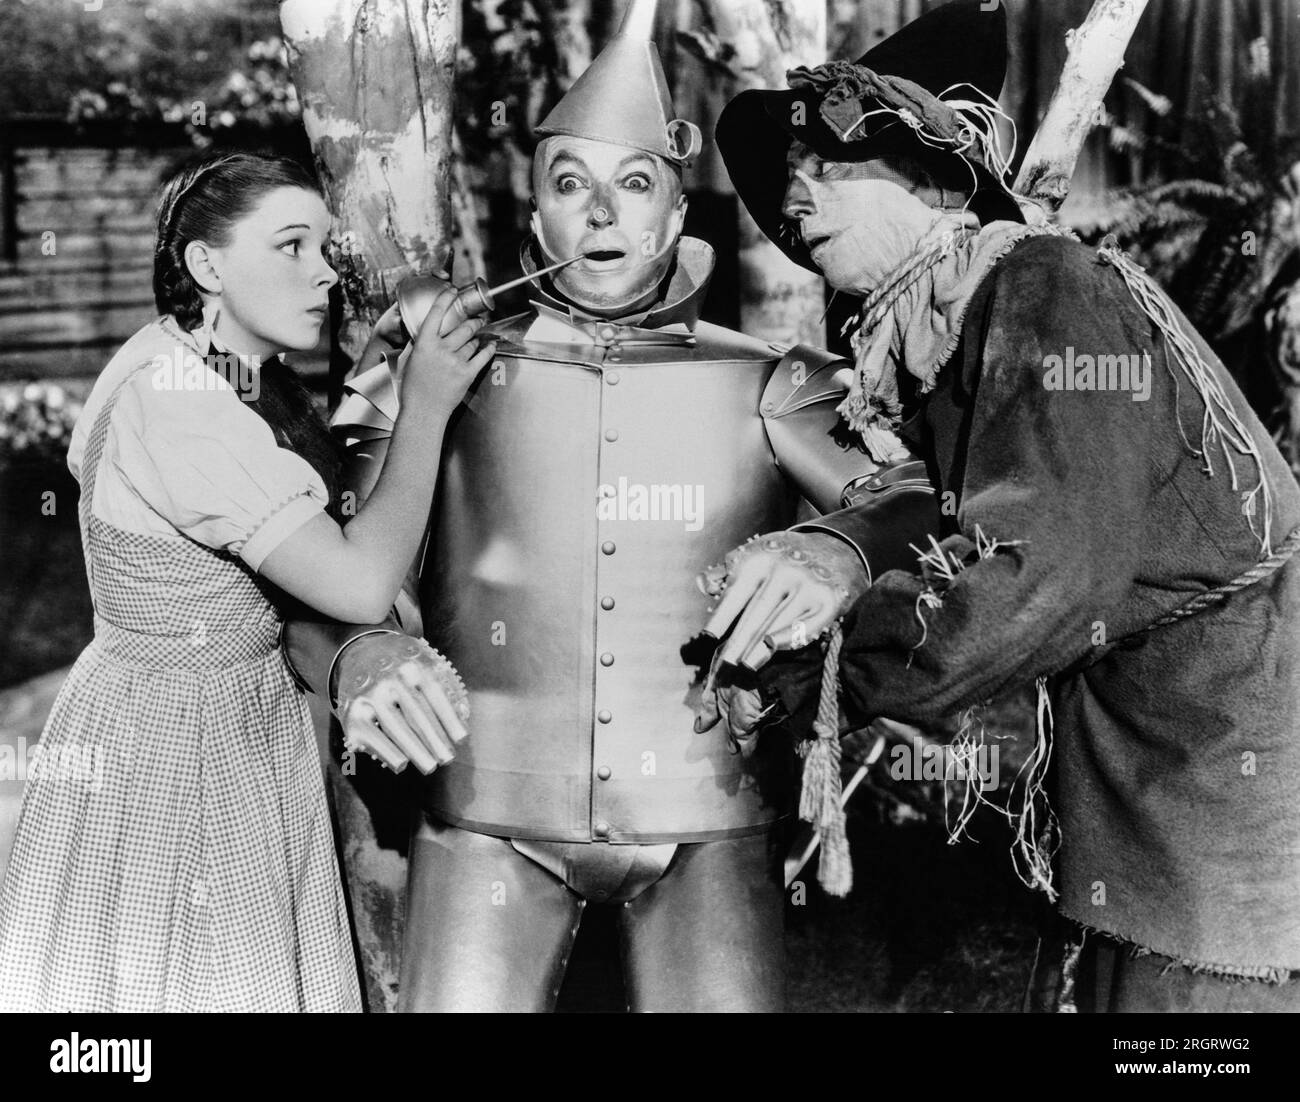 Hollywood, Kalifornien: ca. 1939 Eine Szene aus dem Zauberer von Oz mit Dorothy, The Tin Woodman und Scarecrow, gespielt von den Schauspielern Judy Garland, Jack Haley und Ray Bolger. Stockfoto